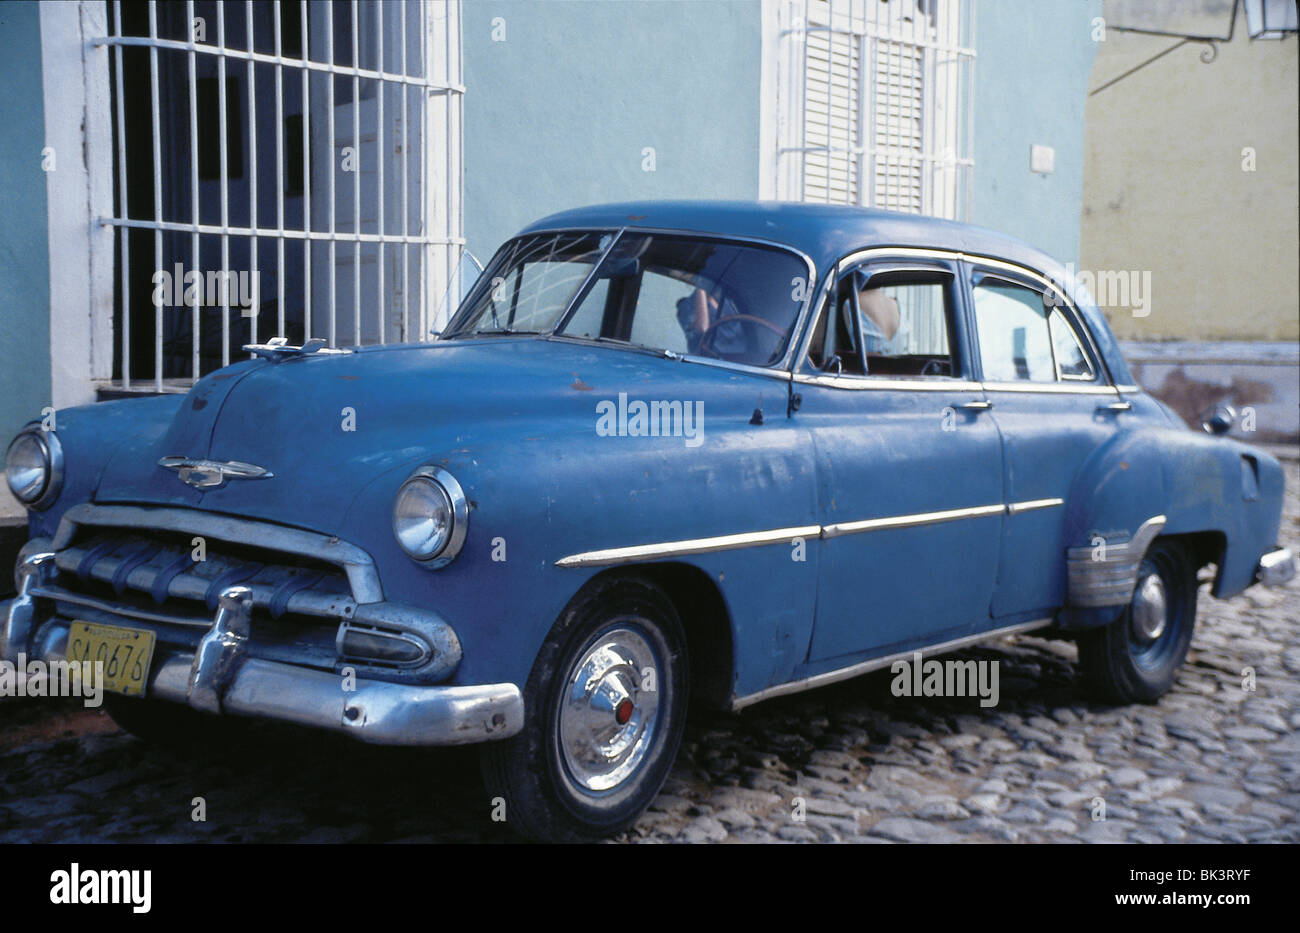 Berline bleue vintage des années 1950 à quatre portes voiture Chevrolet garée sur le trottoir À Cuba Banque D'Images